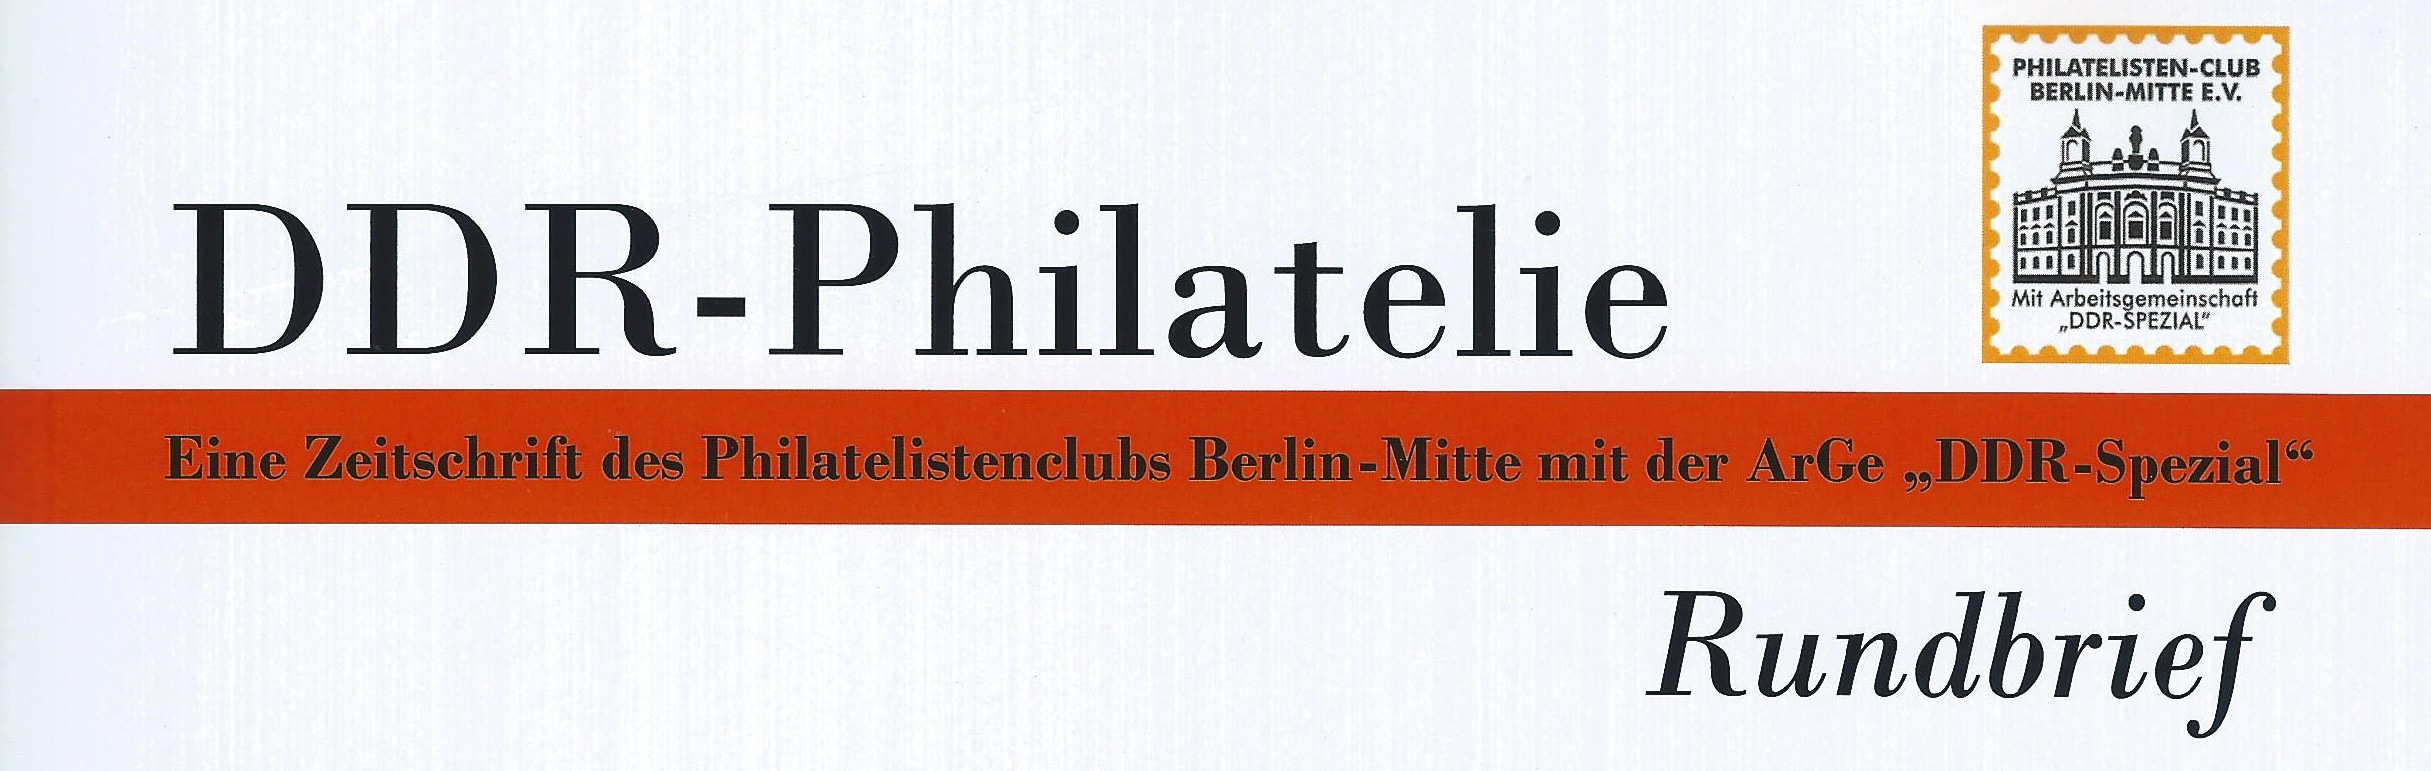 DDR Philatelie Literatur Rundbrief